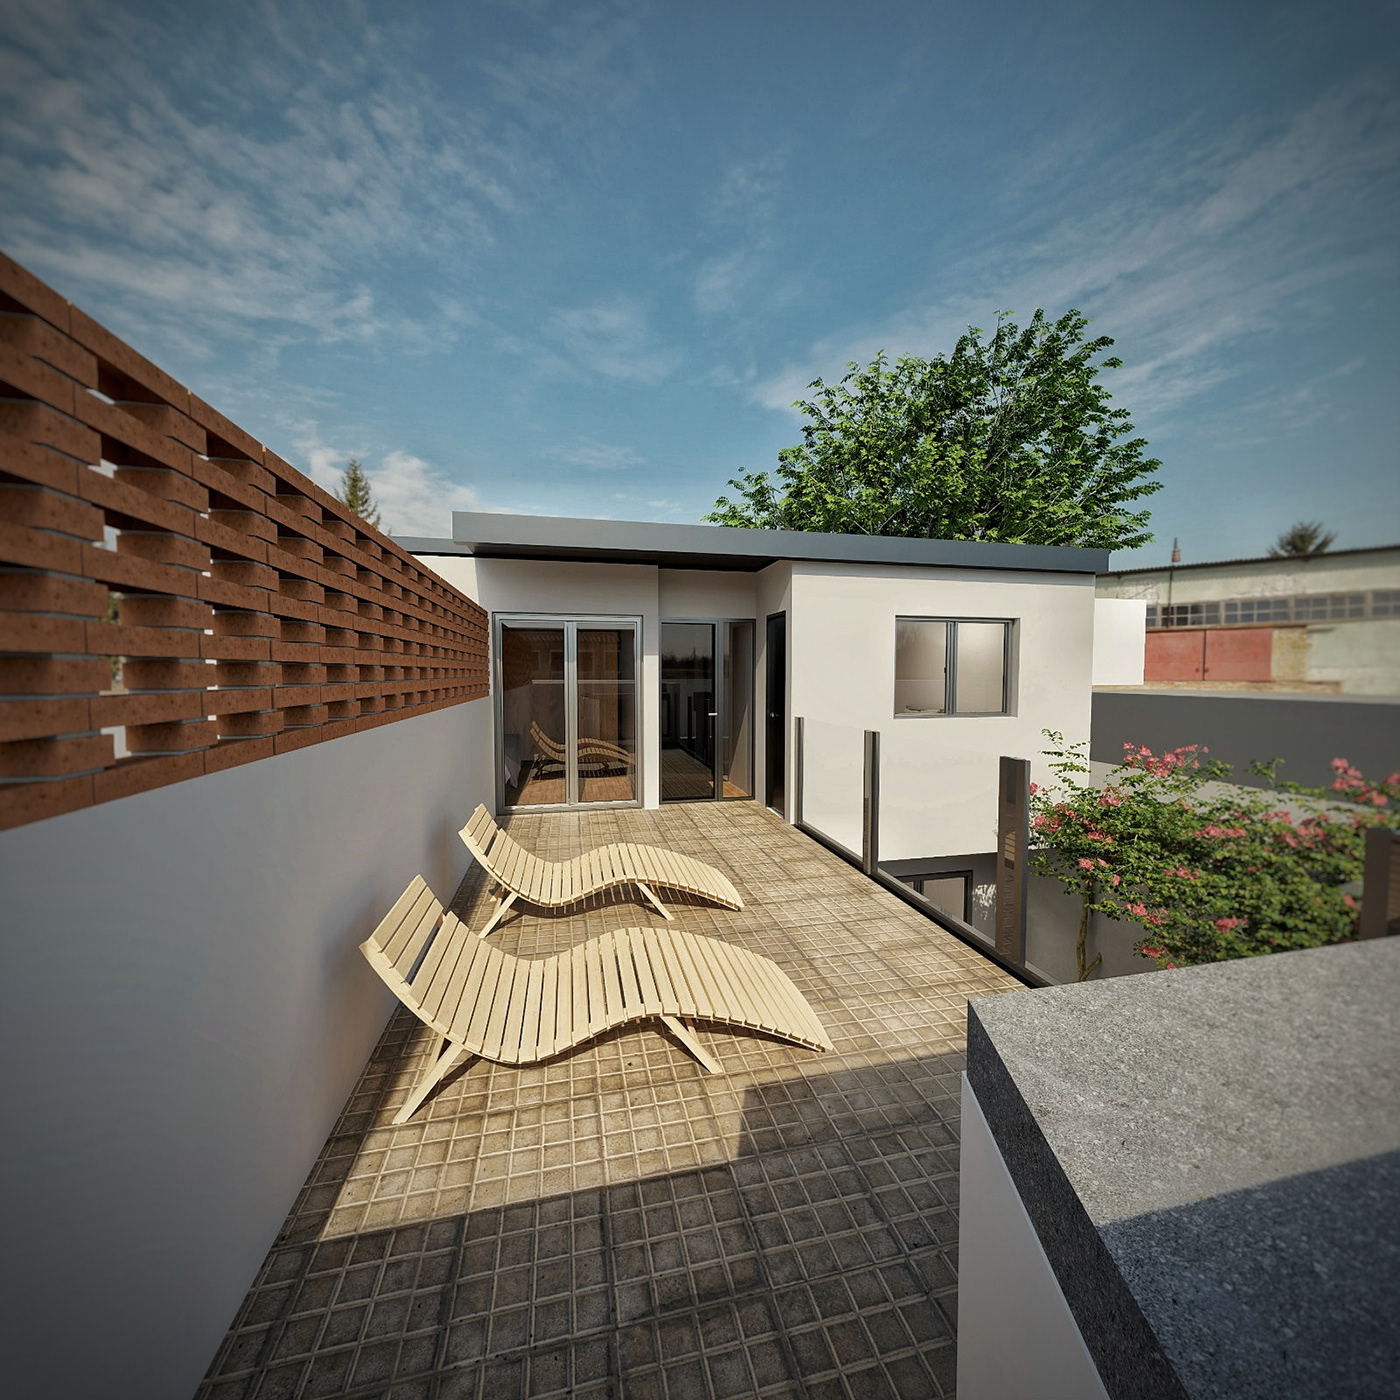 reforma architecture Render visualization interior design  vray SketchUP 3D modern archviz